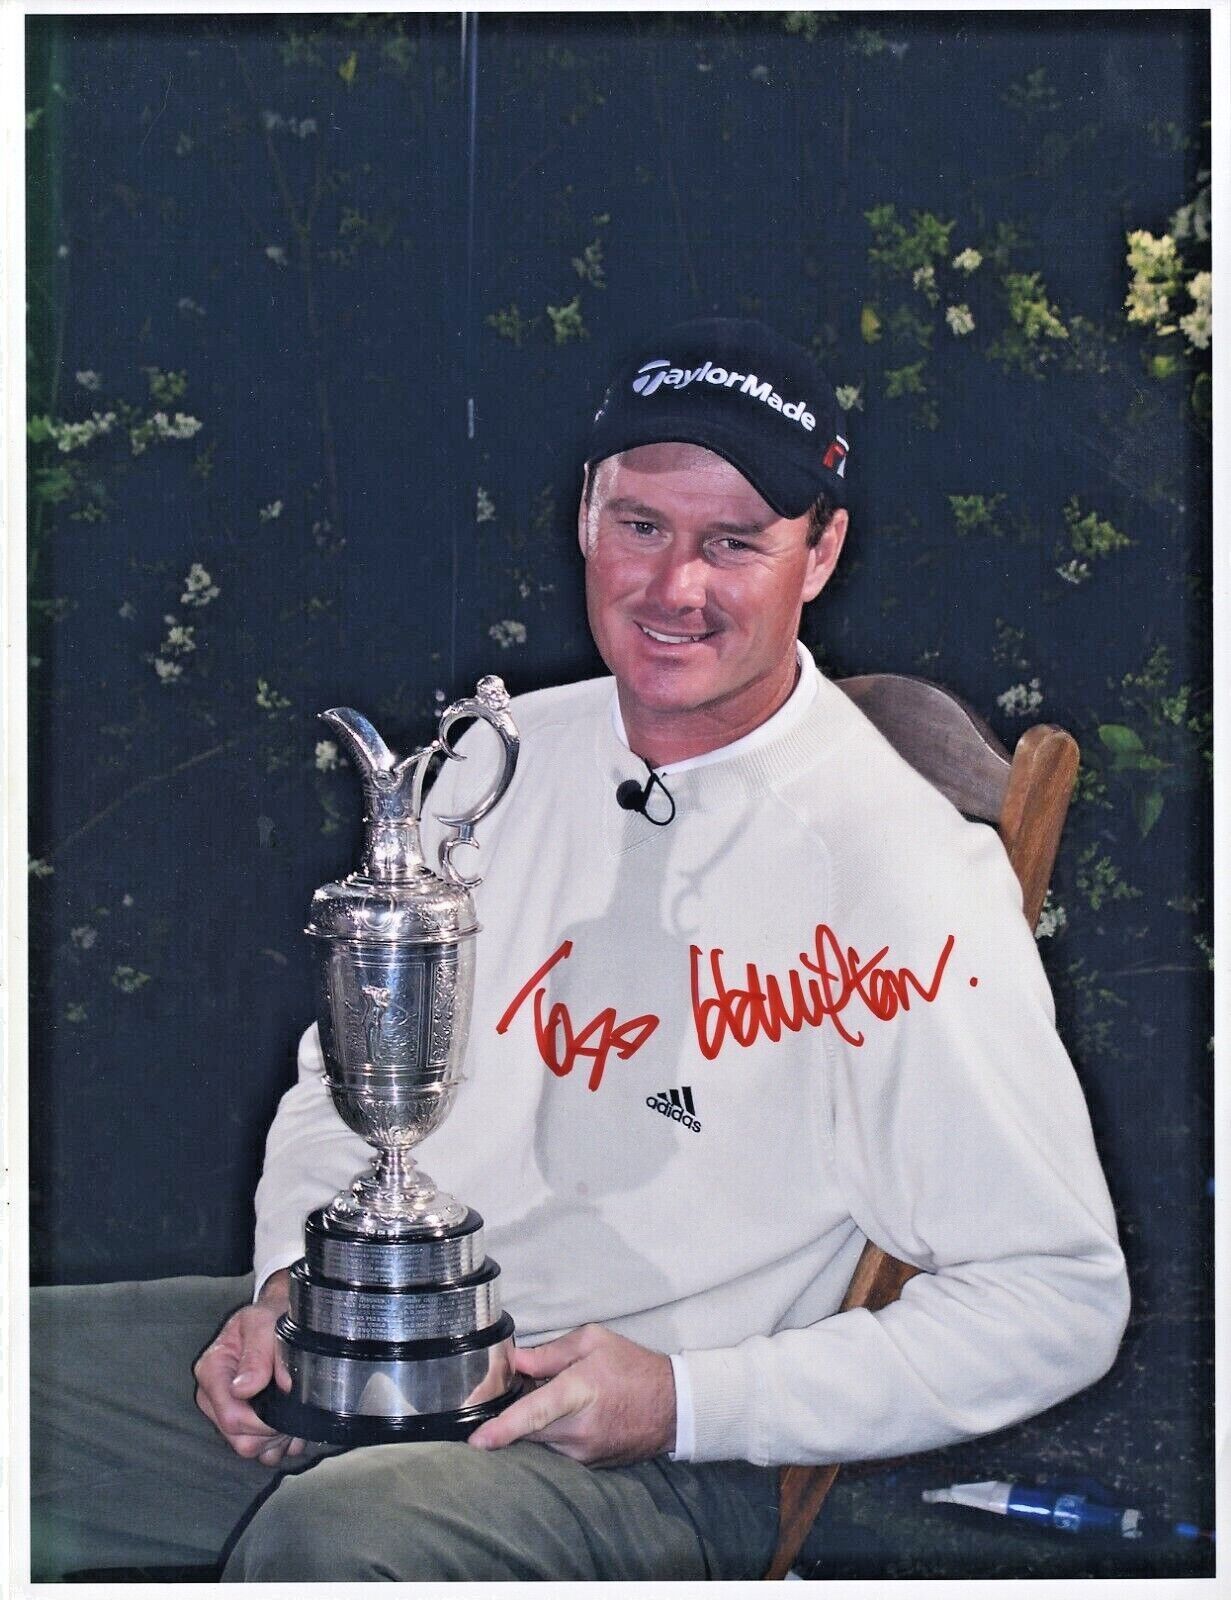 Todd Hamilton '2004 British Open Champion' In Person Signed Photograph